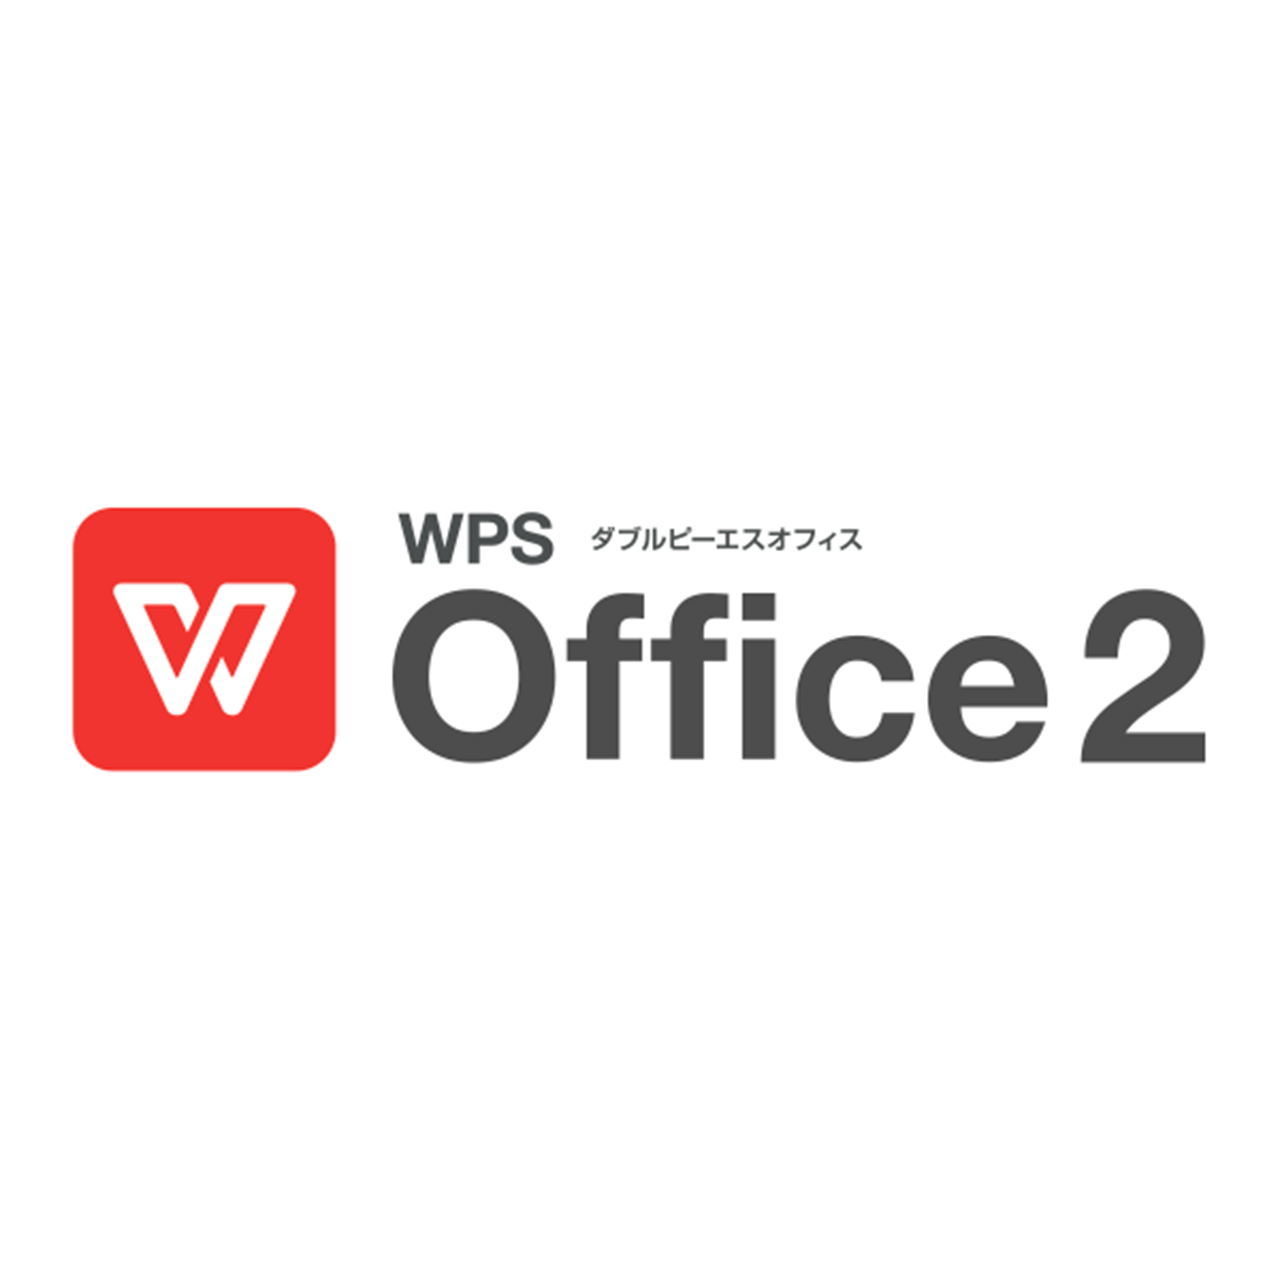 【オプション】WPS office2